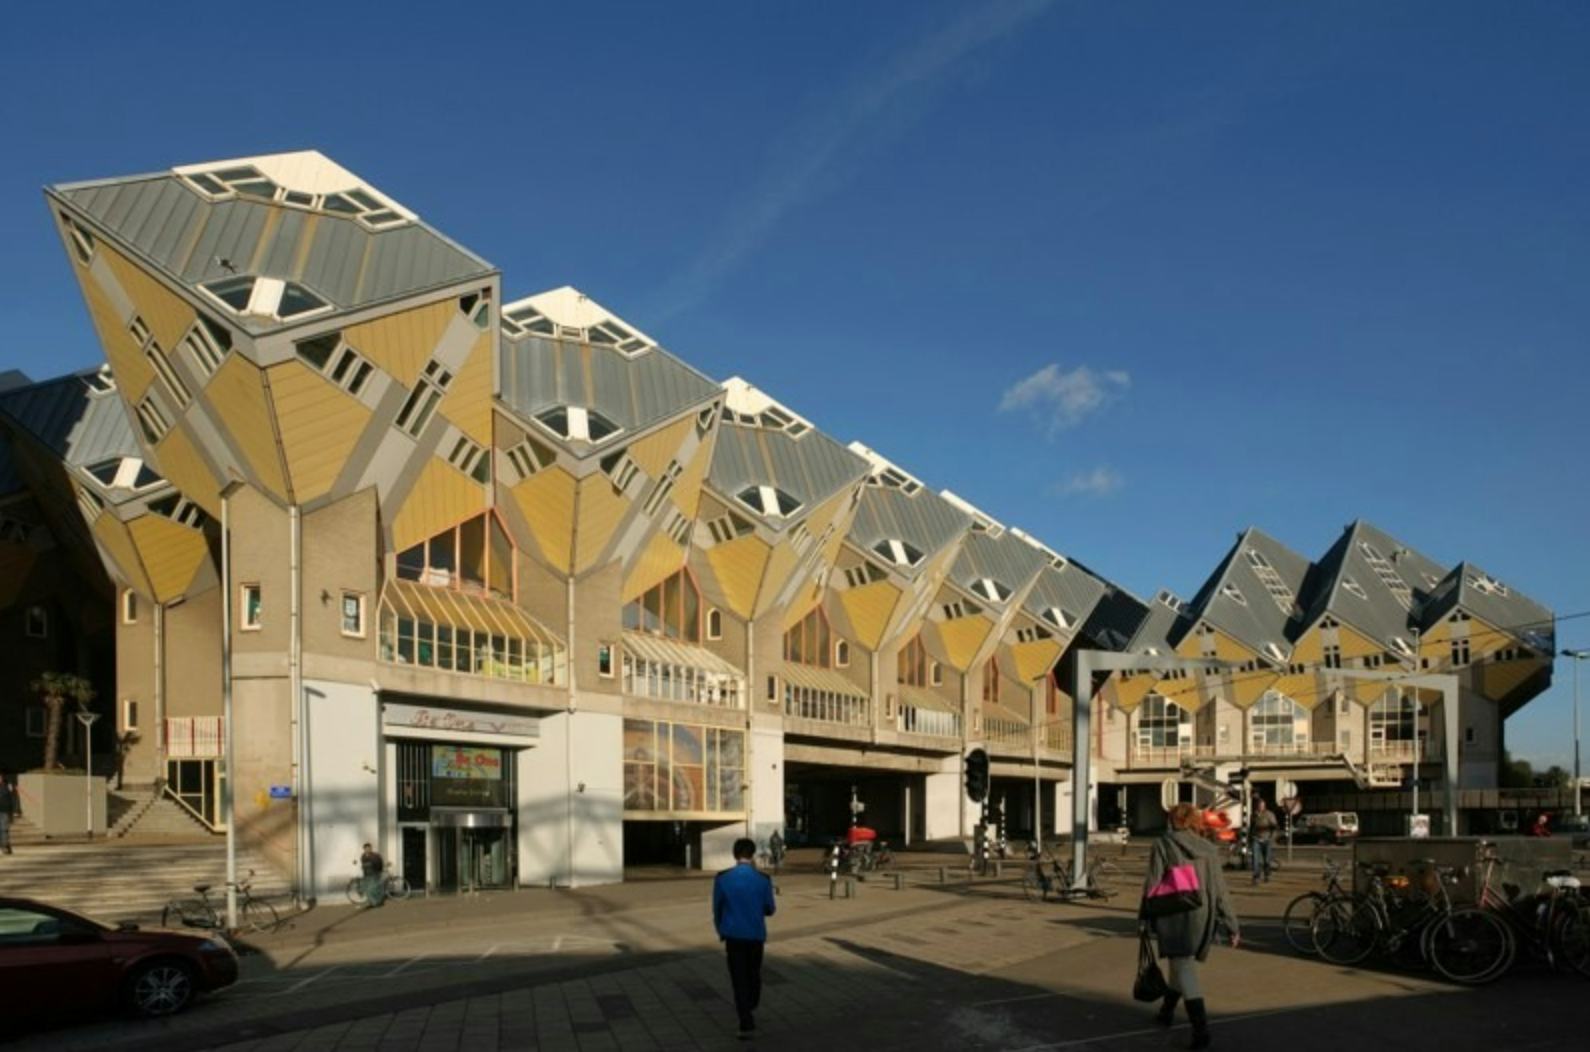 Kubuswoningen in Rotterdam door Piet Blom